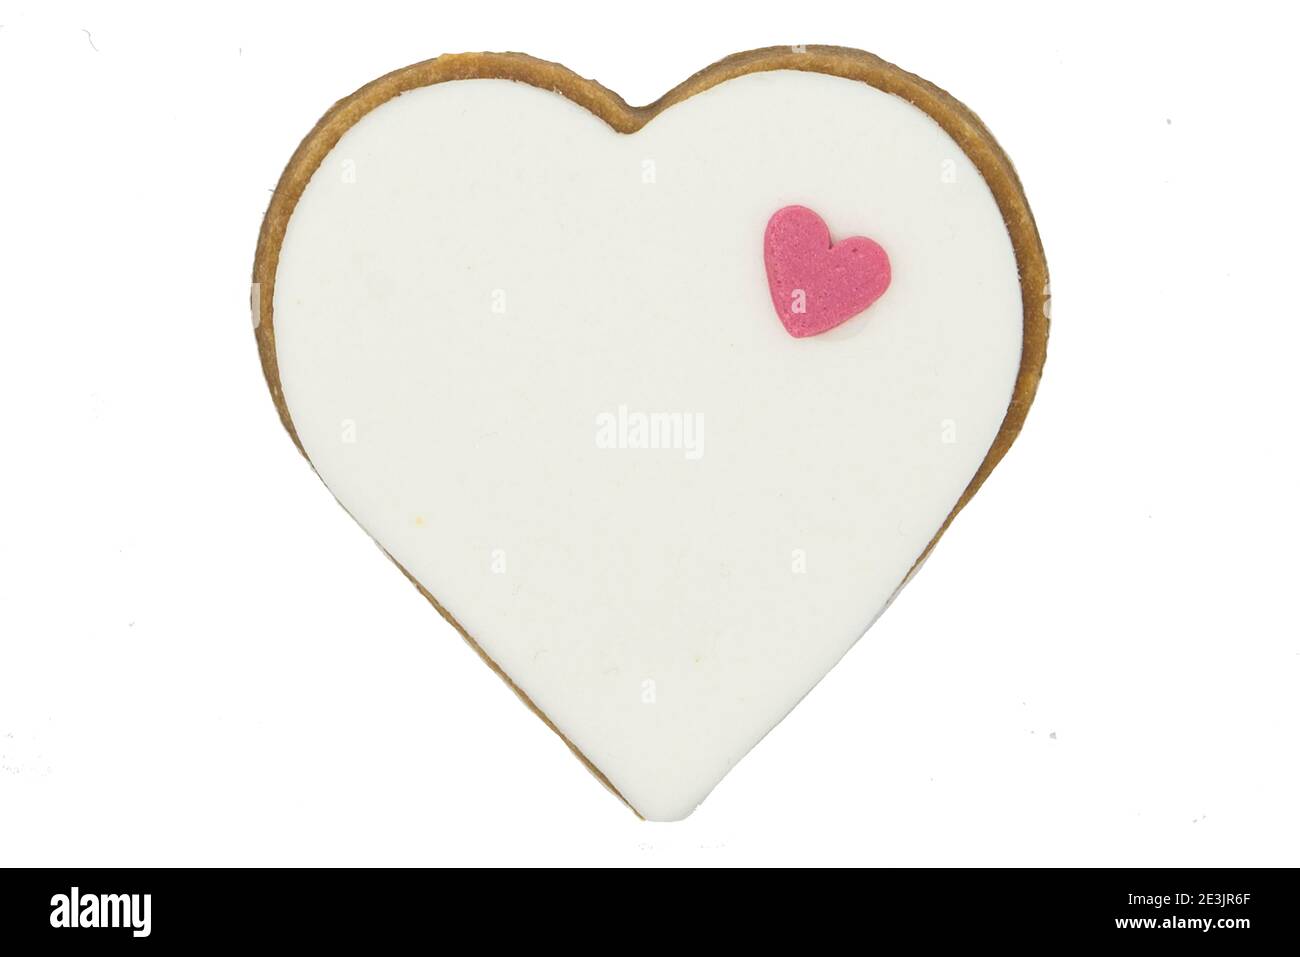 Petits gâteaux en forme de cœur pour les mariages ou la Saint-Valentin Banque D'Images